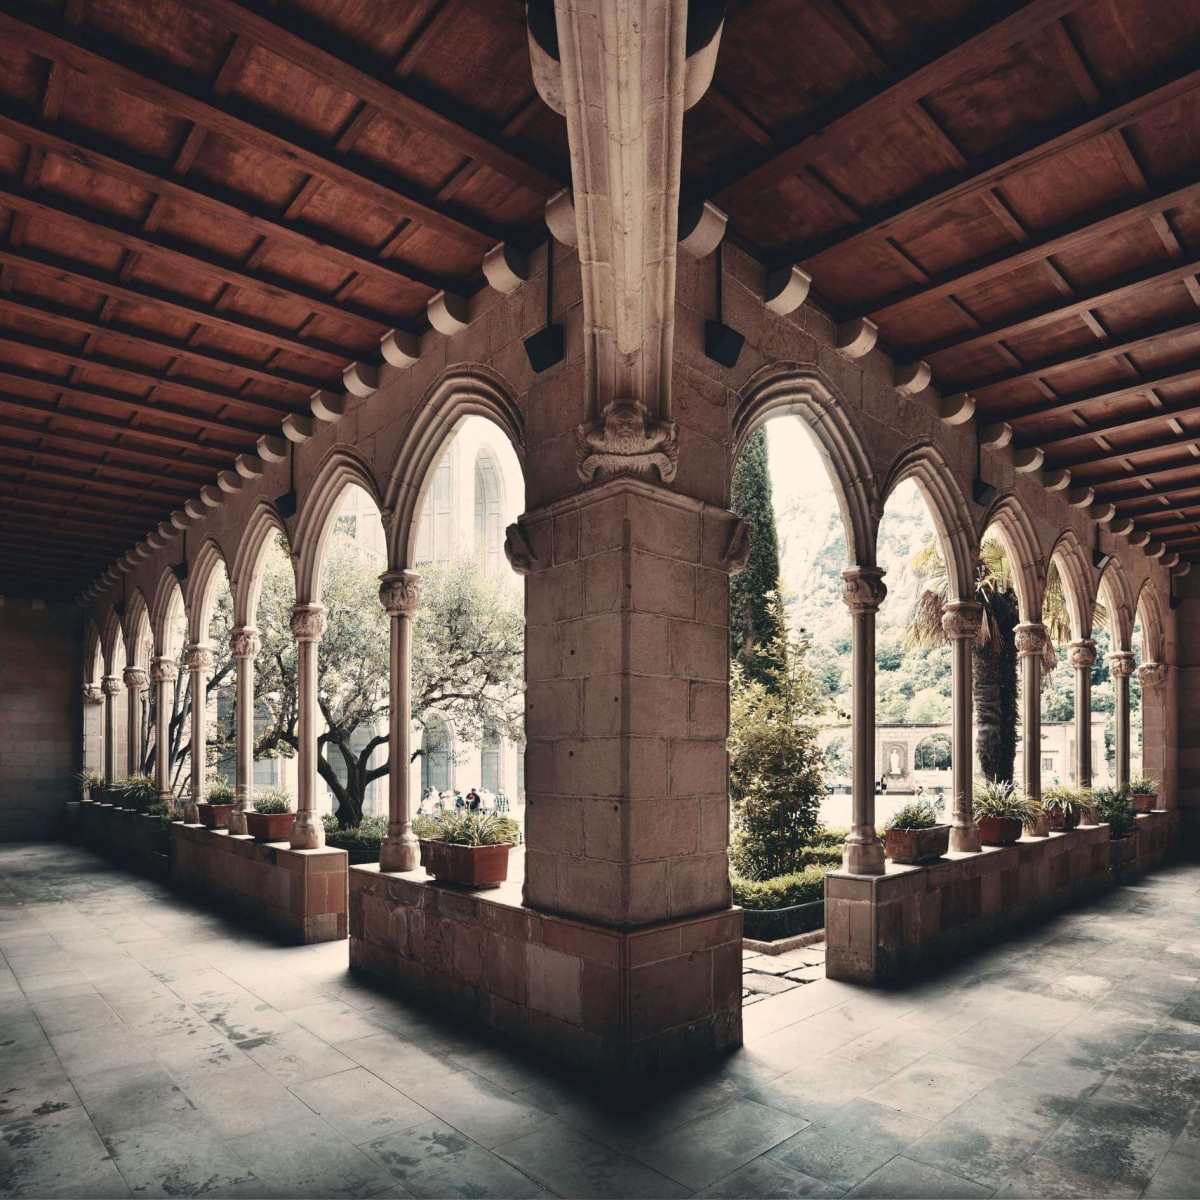 Walkway. Santa Maria de Montserrat Abbey in Barcelona Spain